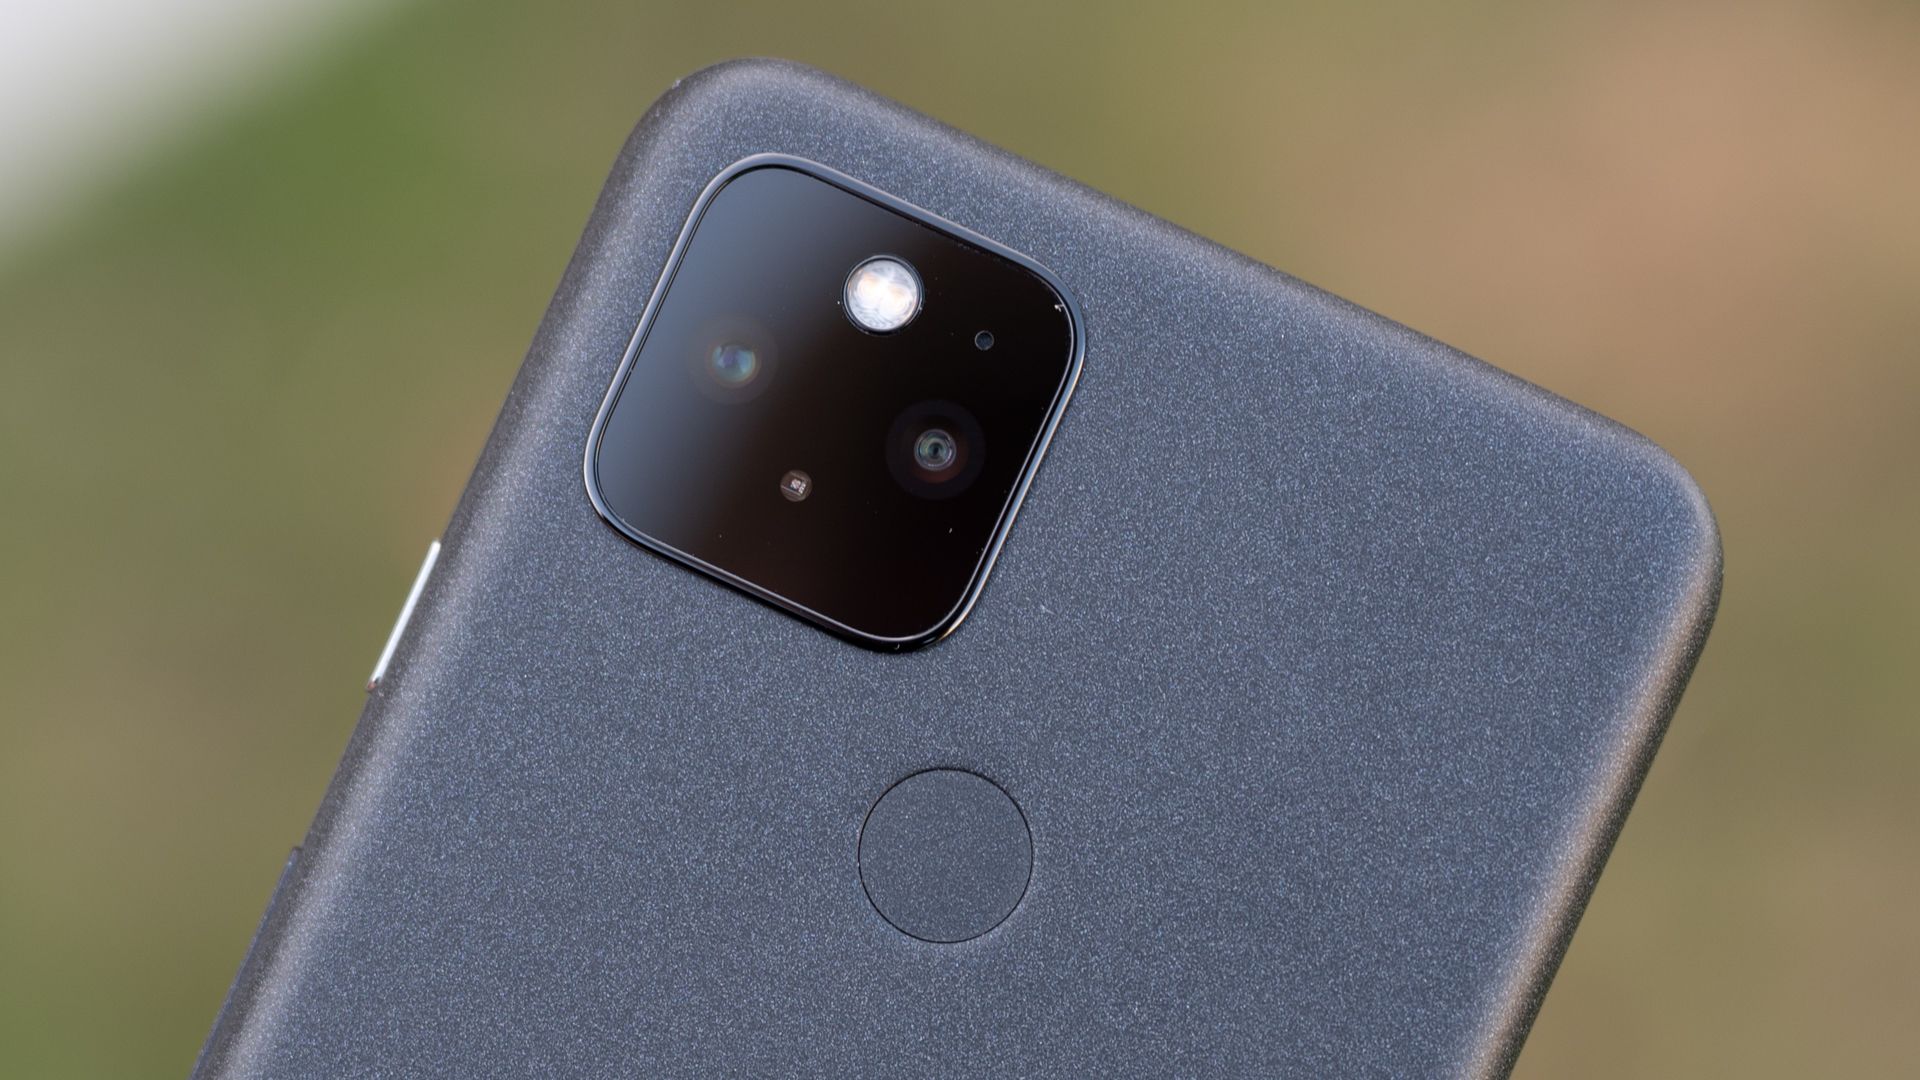 The black Pixel 5's camera and rear fingerprint sensor